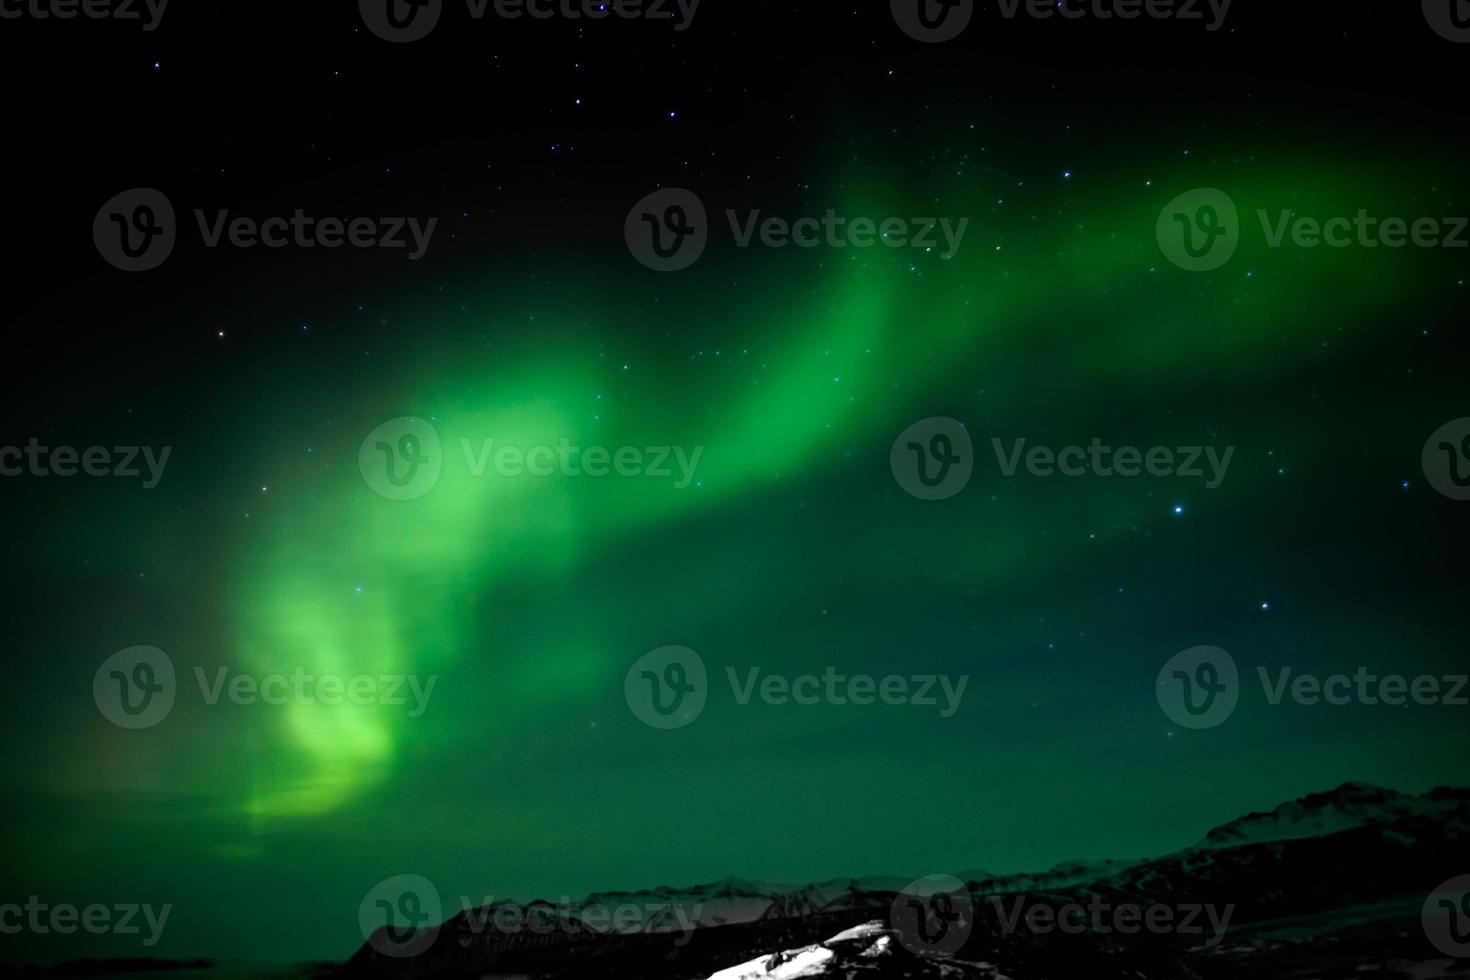 Islanda meridionale dell'aurora boreale foto